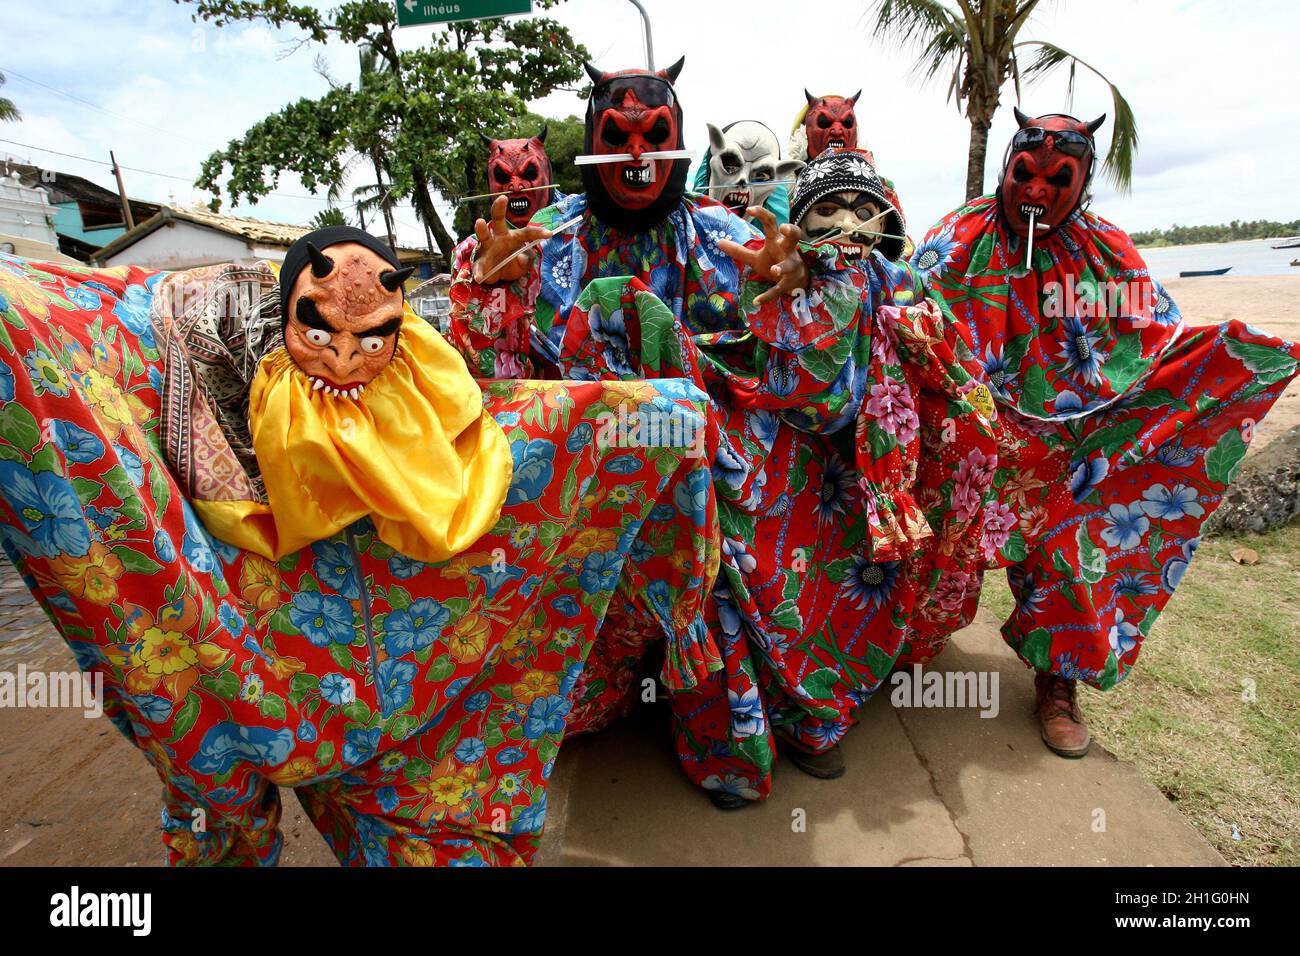 itacare, bahia / brasilien - 20. februar 2012: Maskierte Männer werden während des Karnevals in der Stadt Itacare im Süden Bahia auf der Straße gesehen. *** Loc Stockfoto